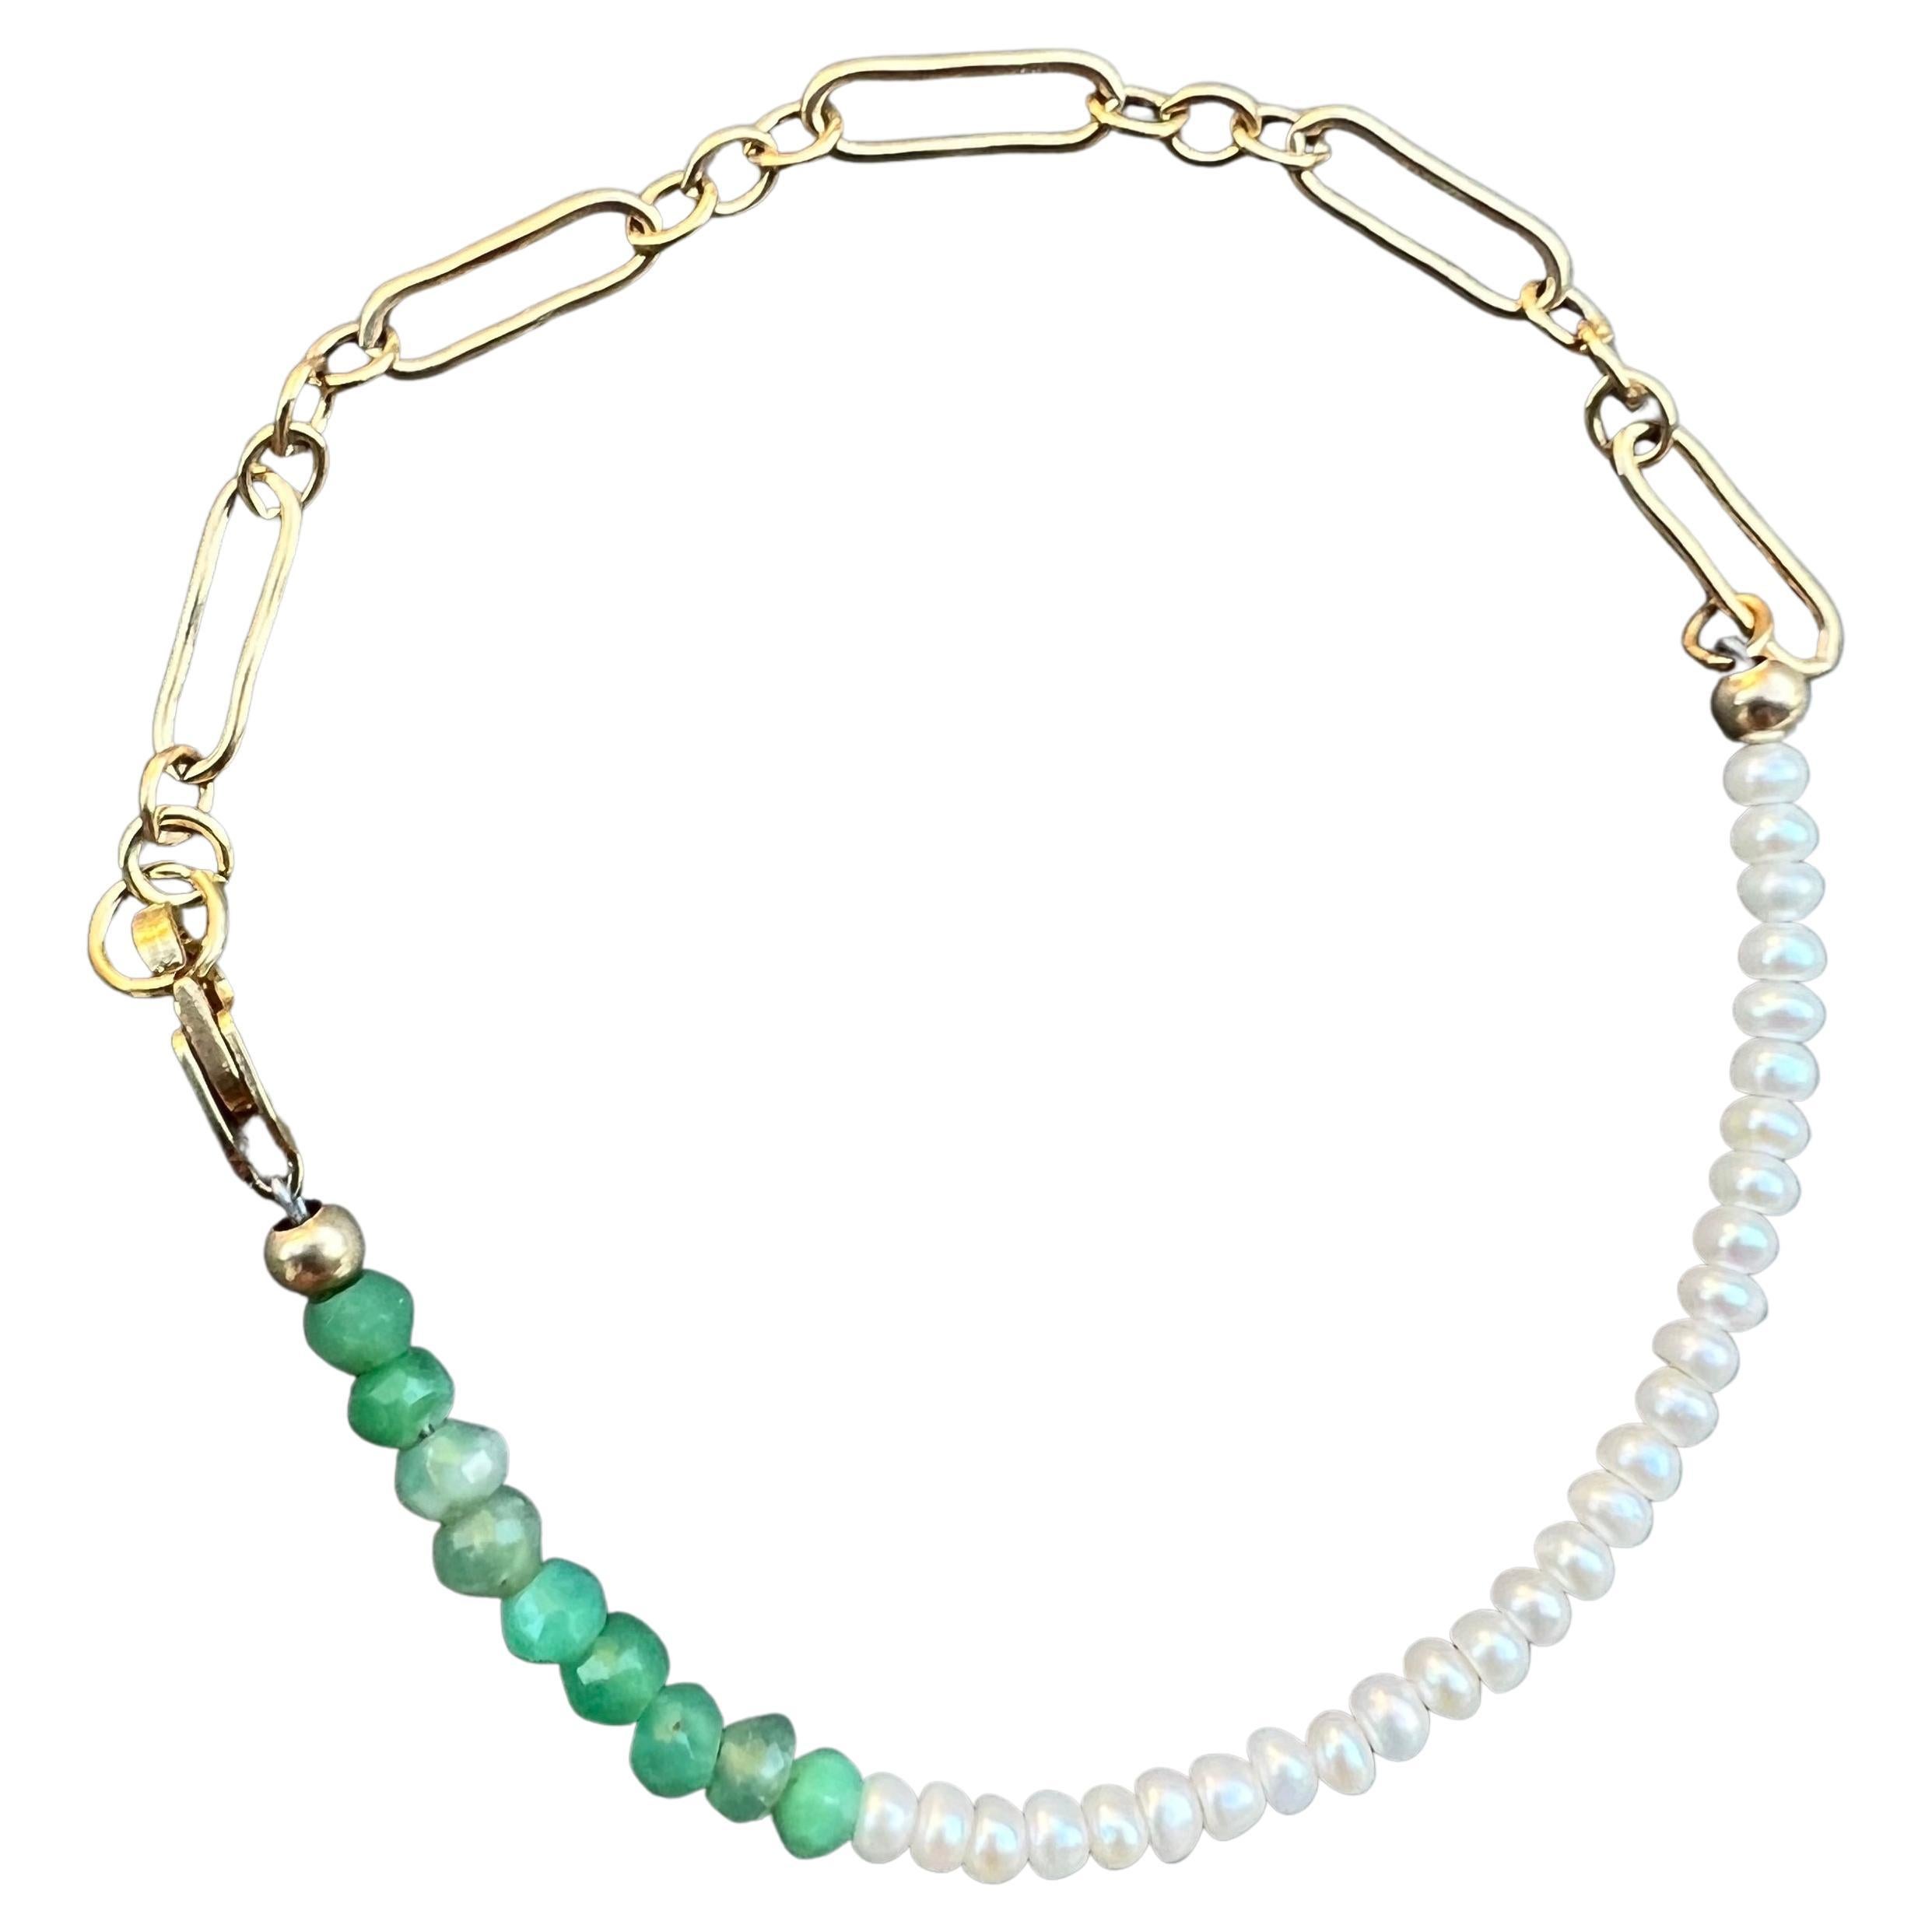 Weiße weiße Perlenkette Armband Grüner Chrysopras Gold gefüllt J Dauphin